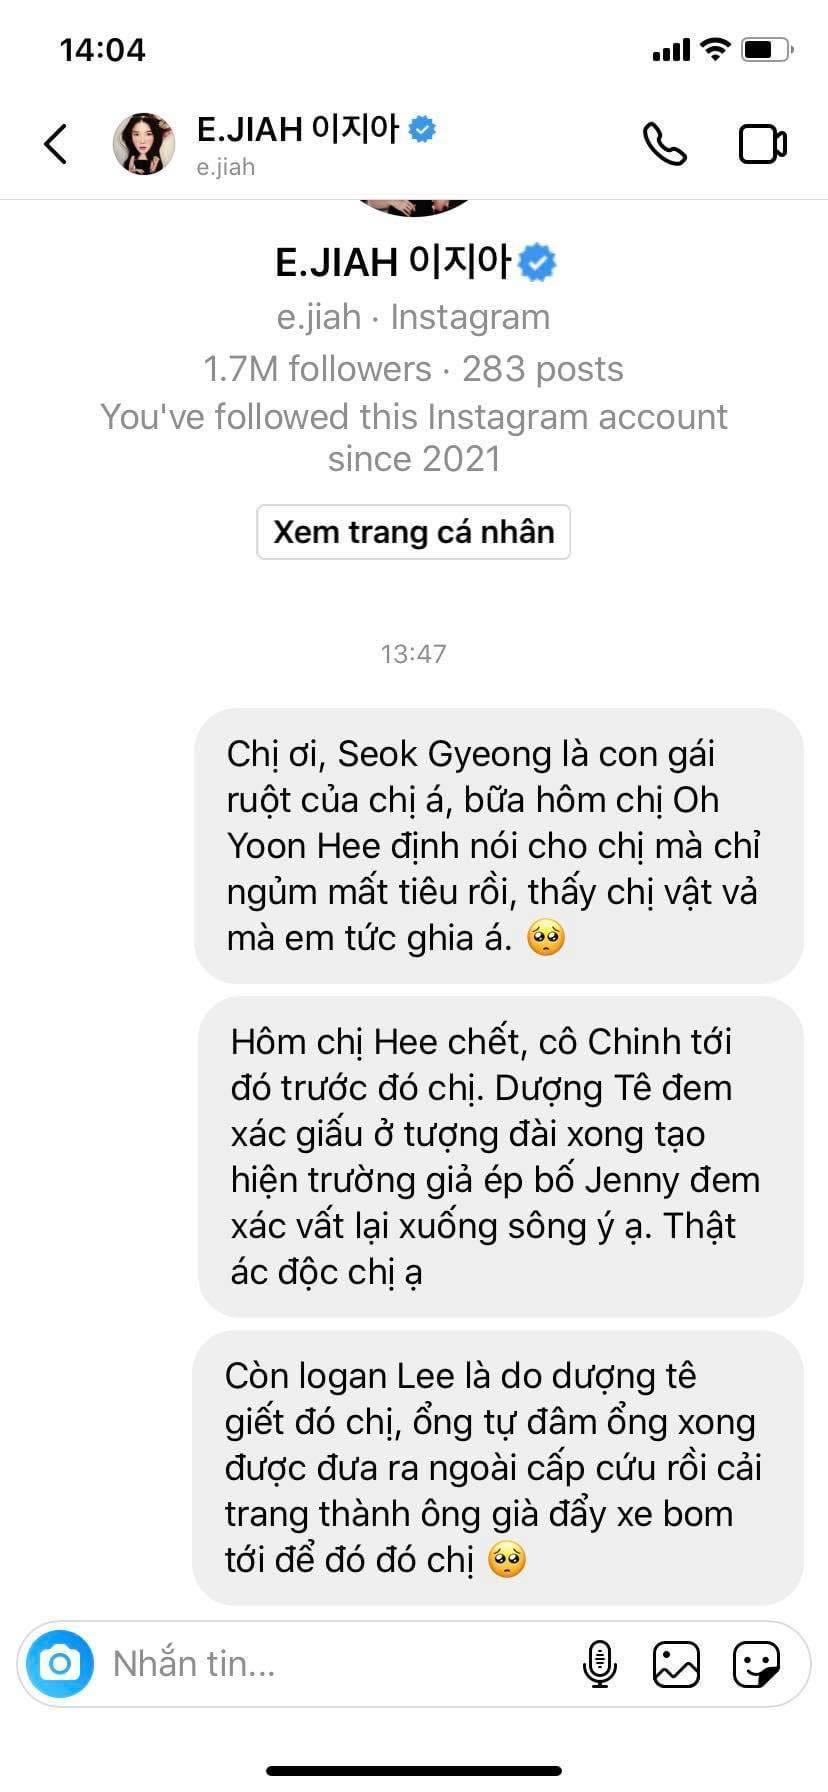  
Fan nhắn tin cho bà cả Shim Su Ryeon để nói toàn bộ sự thật trong thời gian qua. (Ảnh: Chụp màn hình)